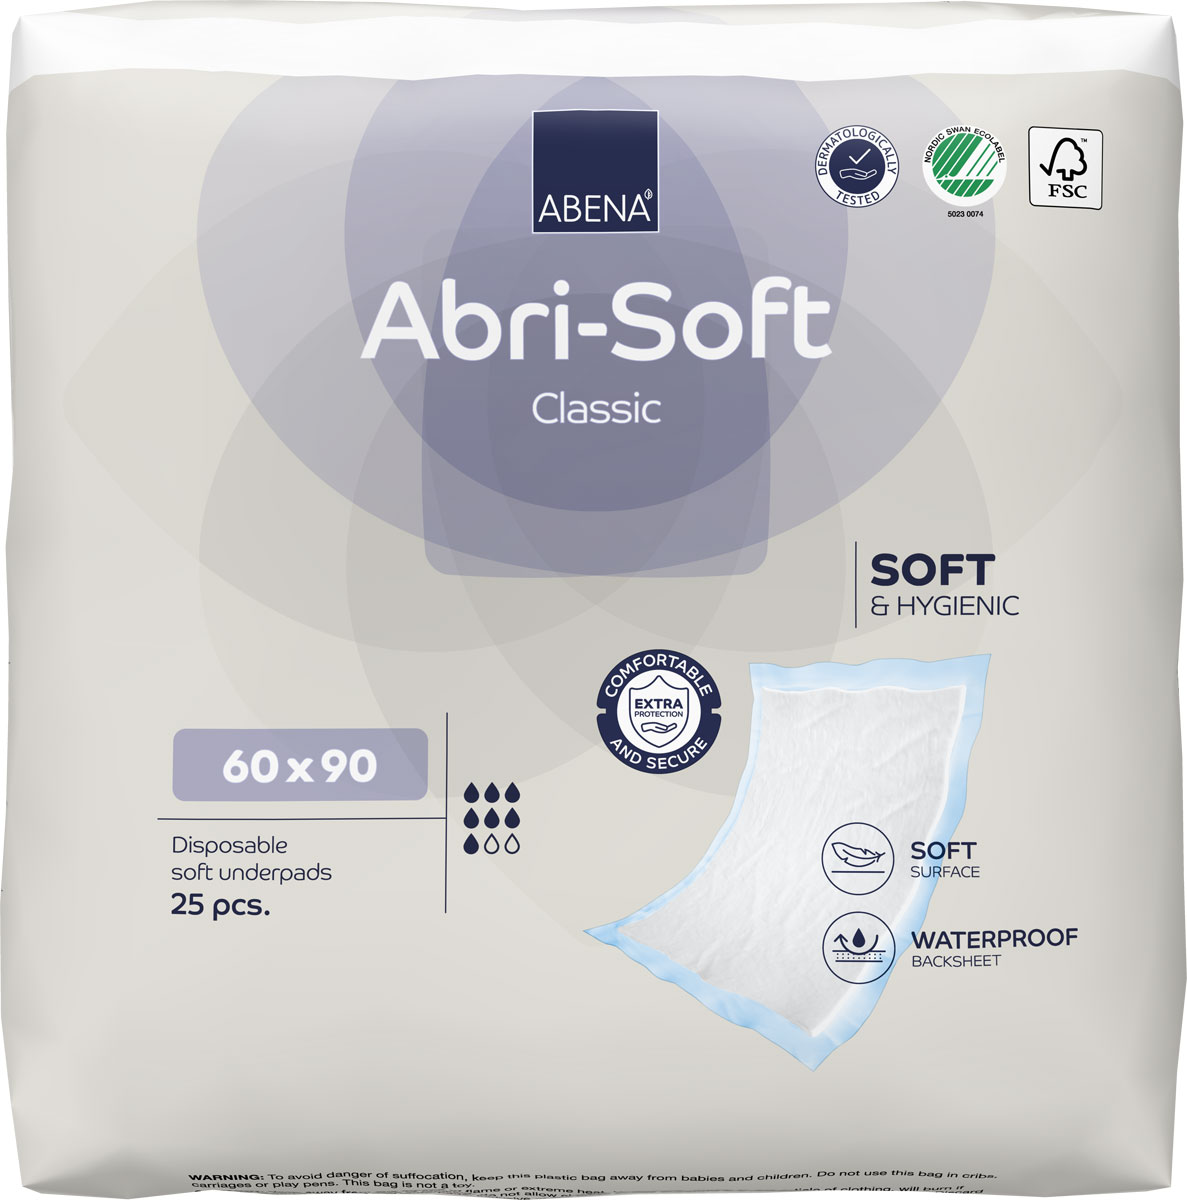 ABENA Abri-Soft CLASSIC Betteinlagen 60 x 90cm - 4x25 (100) Stück